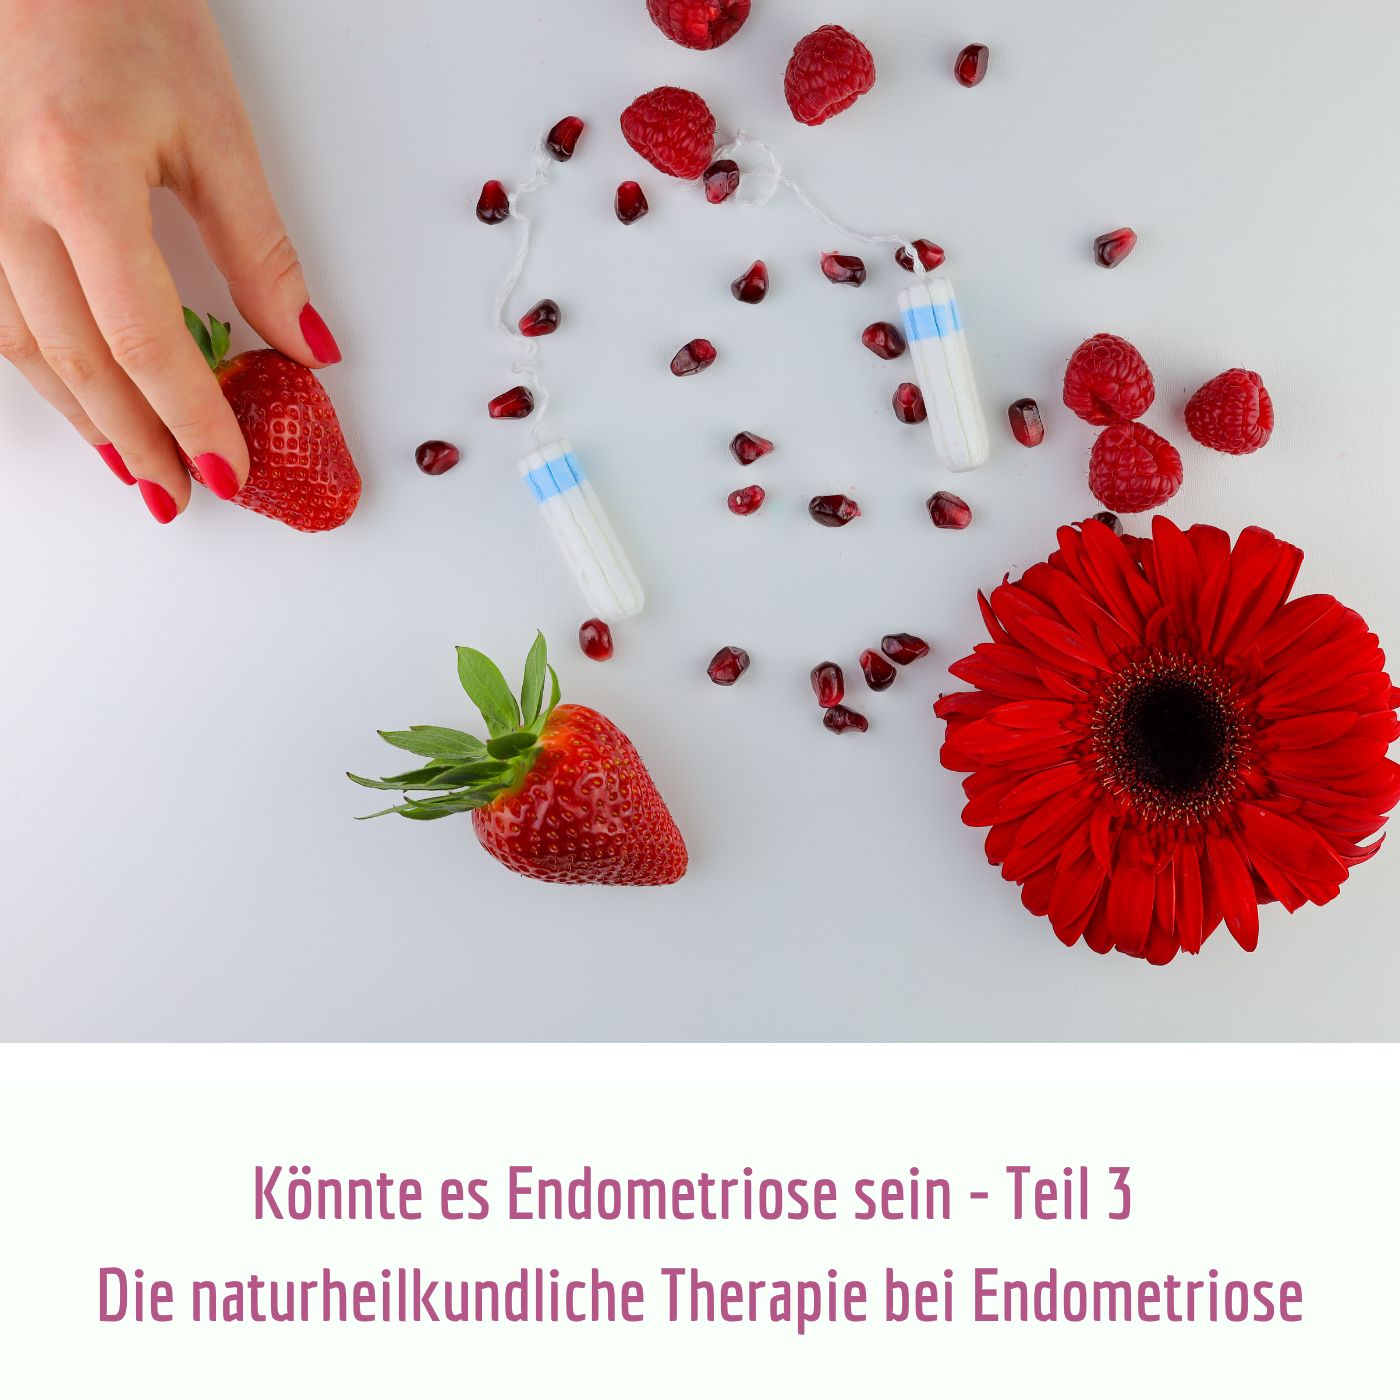 Könnte es Endometriose sein Teil 3 - Die naturheilkundliche Therapie bei Endometriose